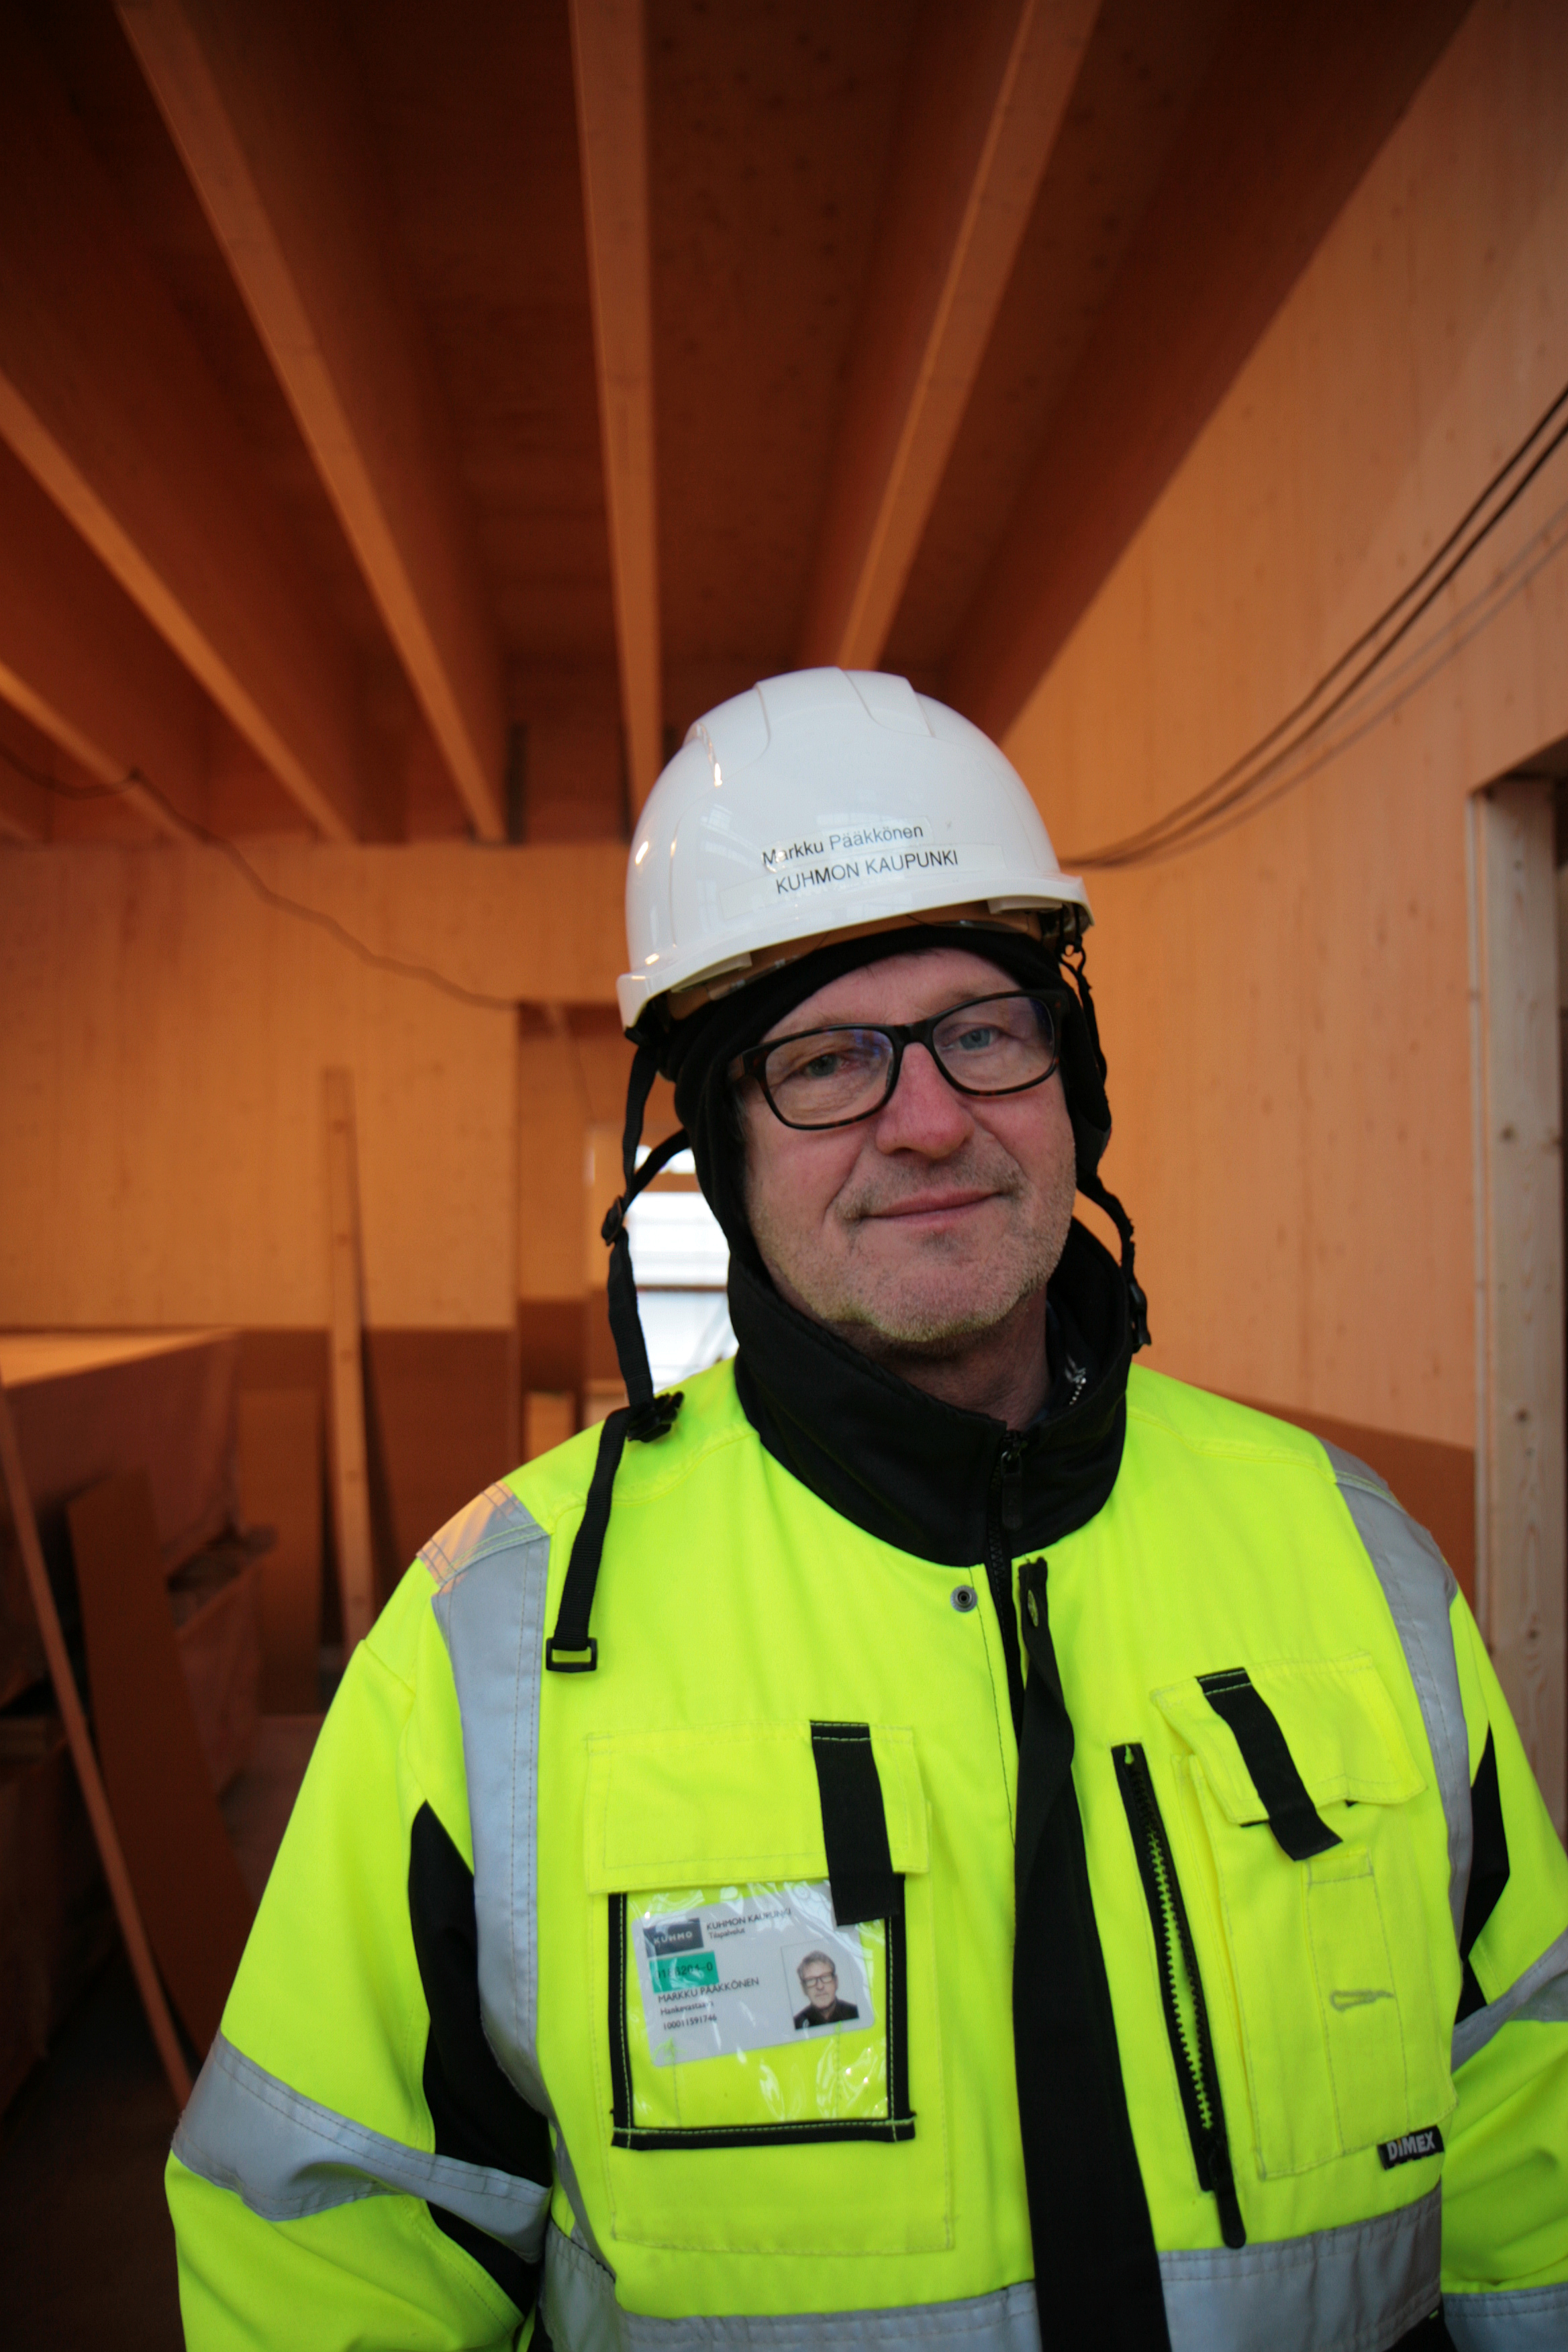 ”Haasteellisinta on nostaa elementit paikalleen teltan sisällä”, Markku Pääkkönen sanoo uuden materiaalin mukanaan tuomista uusista työtavoista. Kuva: Anna Kauppi